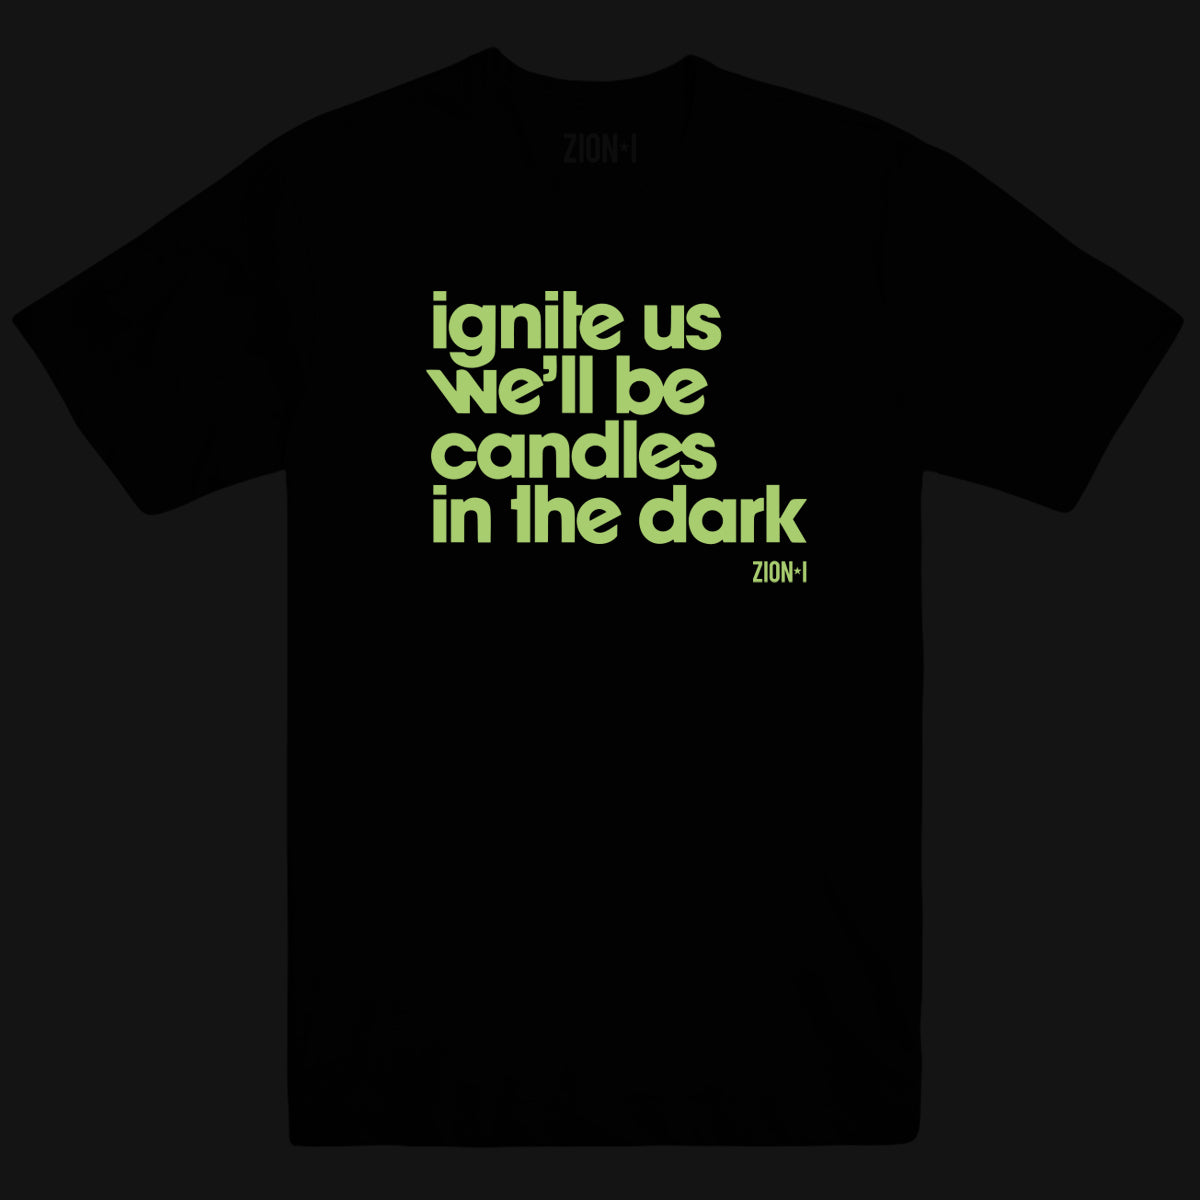 Ignite Us Tee - Black (Glow in the Dark Print)